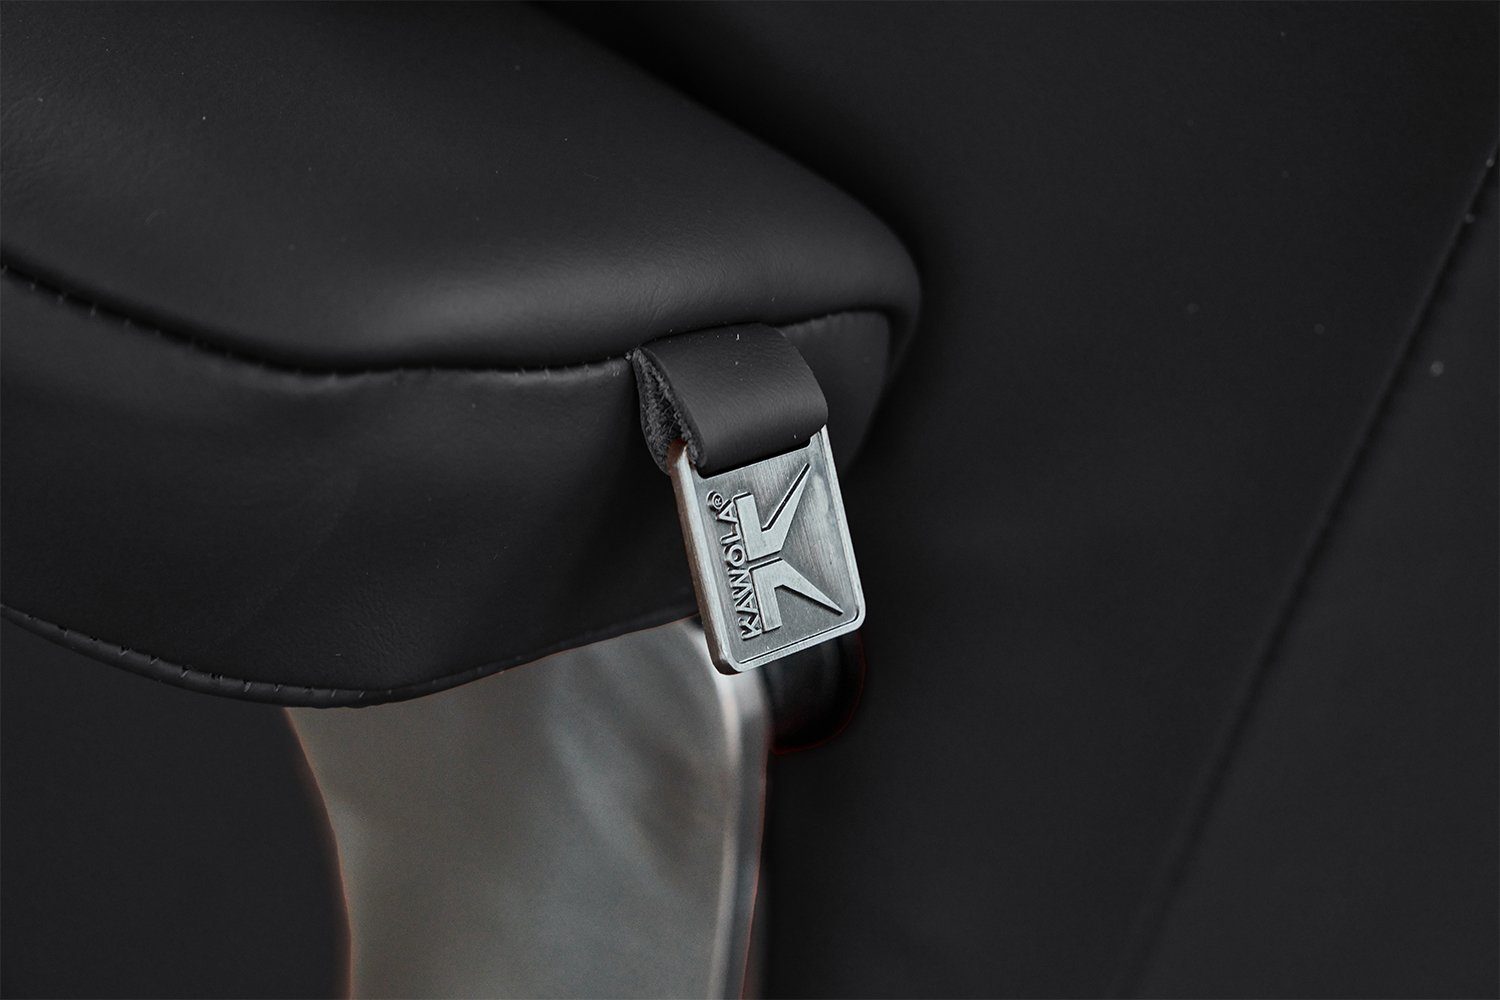 KAWOLA Drehsessel MODO, Relaxsessel schwarz Hocker Leder mit versch. Farben